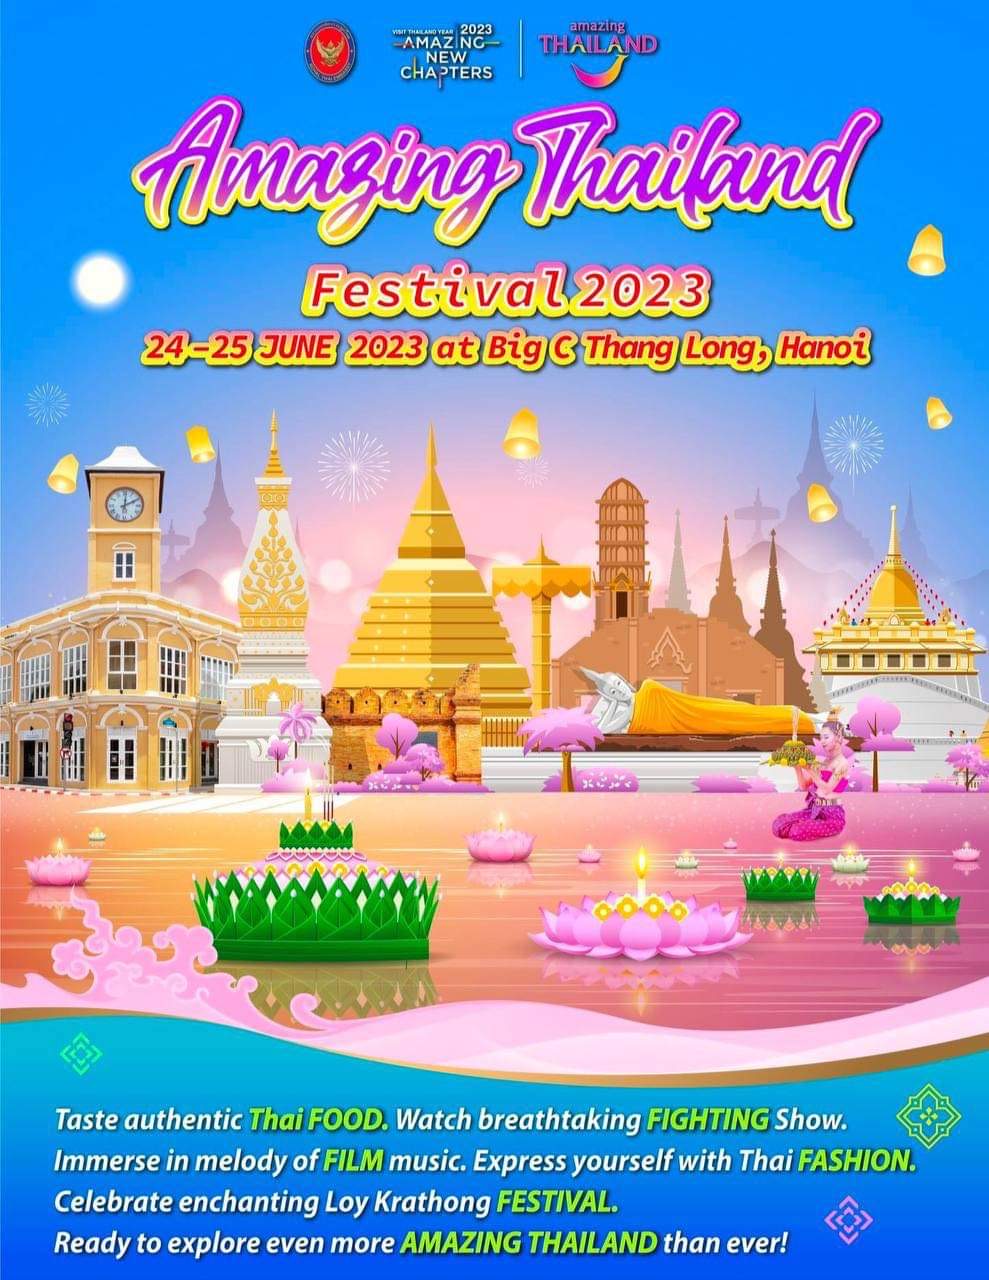  Amazing Thailand Festival 2023: Du lịch Thái Lan tiết kiệm và nhanh chóng tại Hà Nội